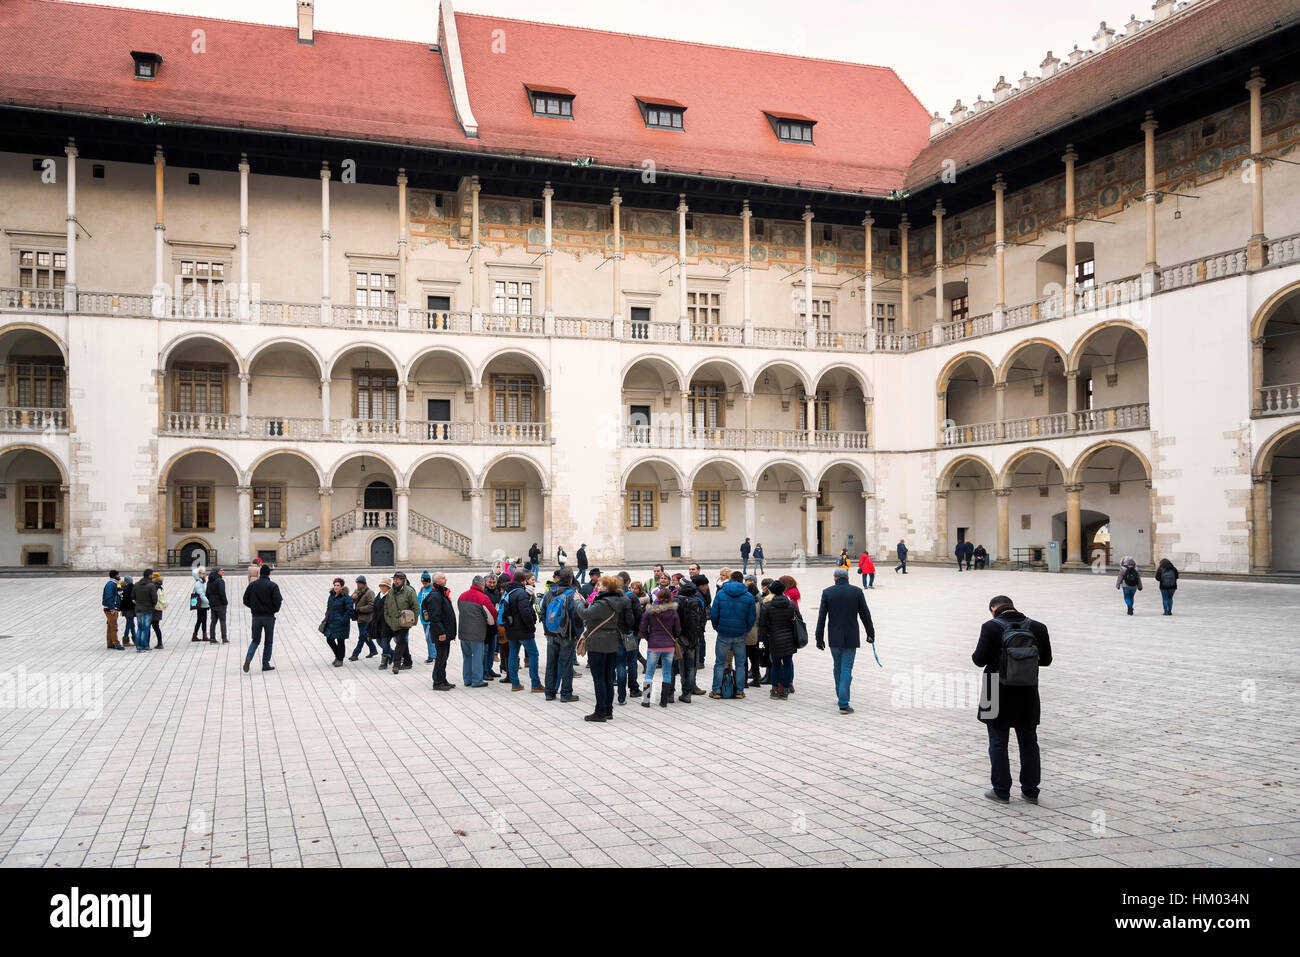 Le château de Wawel, Sigismond i cour renaissance du Stary Cracovie Cracovie Pologne Banque D'Images